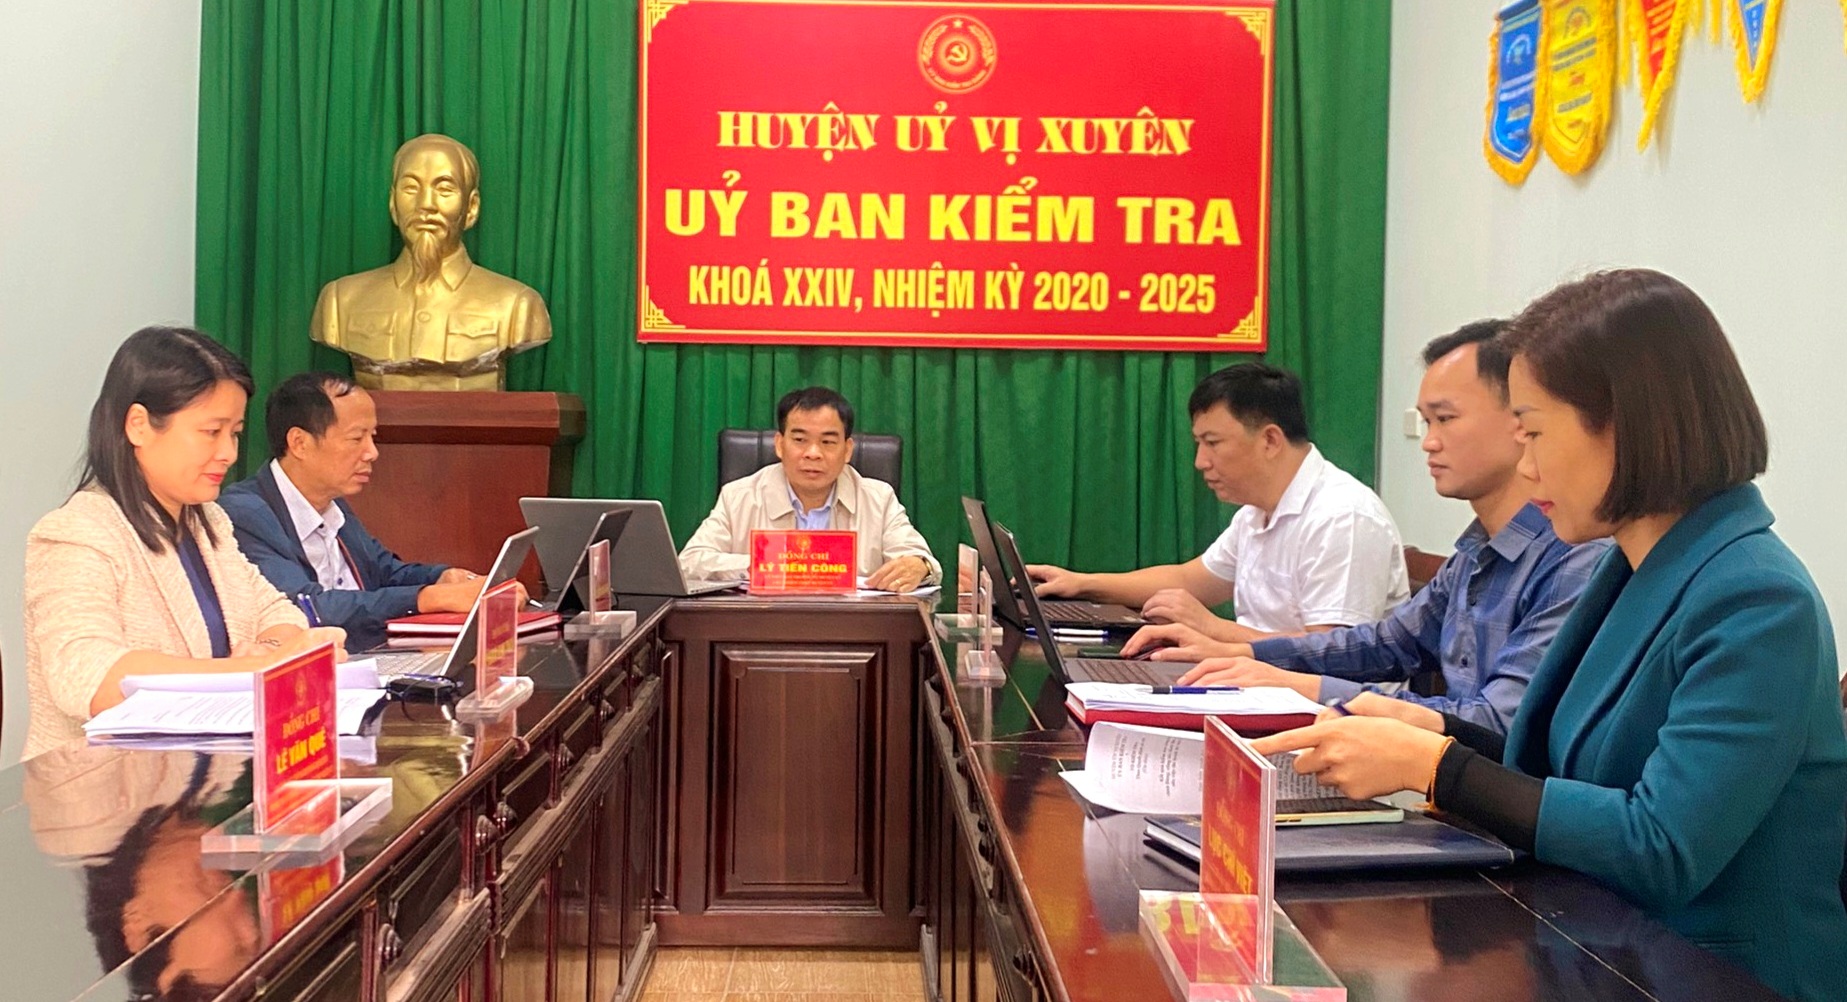 UBKT Huyện ủy Vị Xuyên tổ chức Hội nghị lần thứ 23